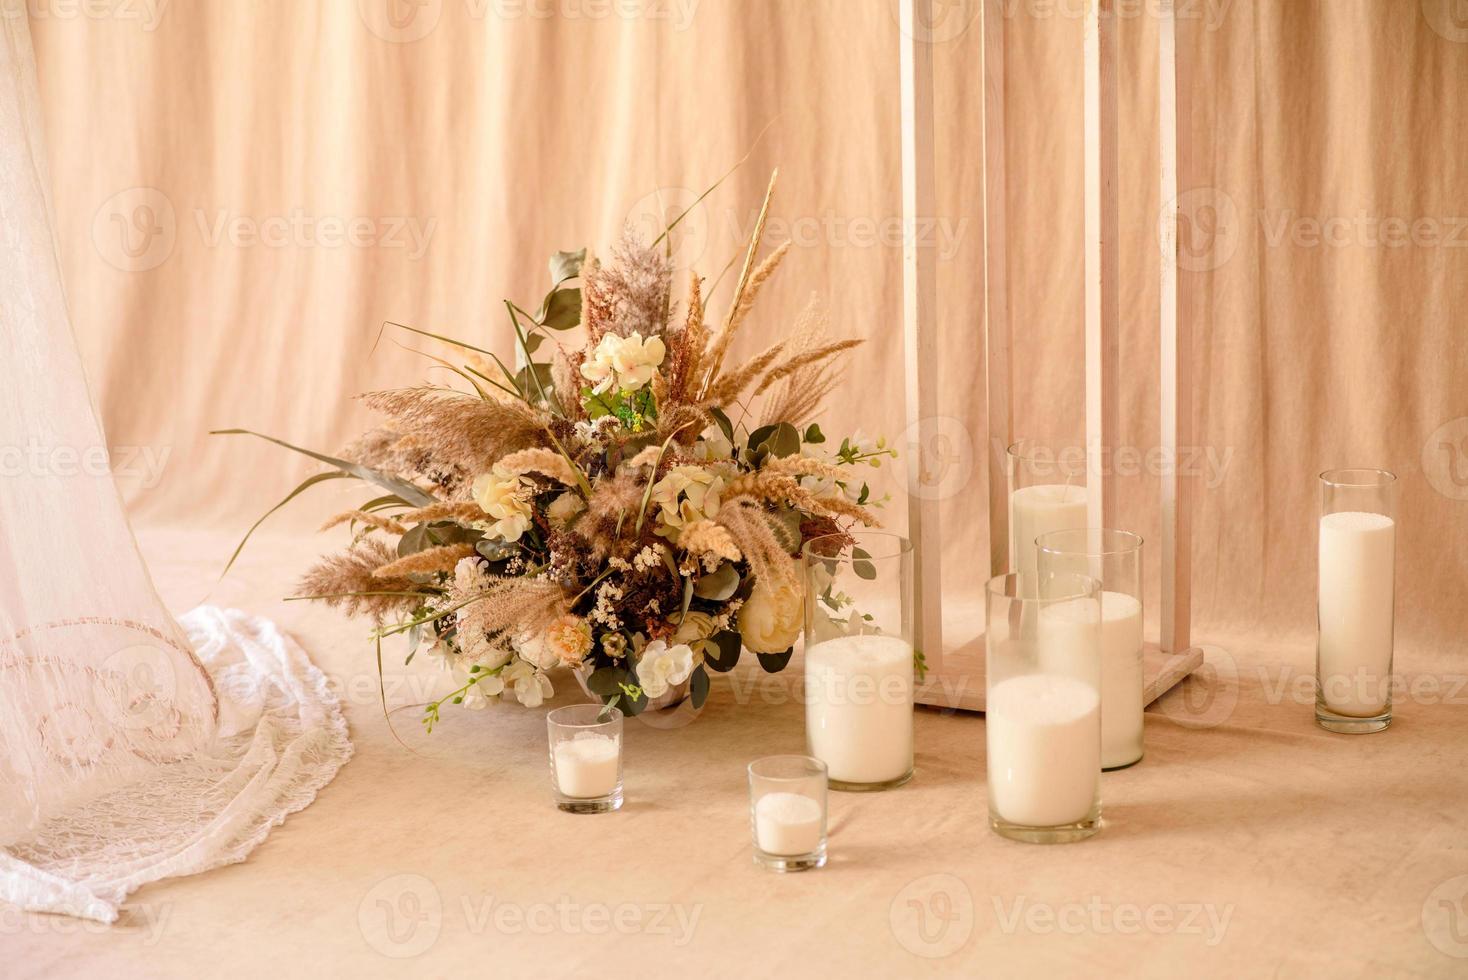 dekorationer från torra vackra blommor i en vit vas på en beige tygbakgrund foto